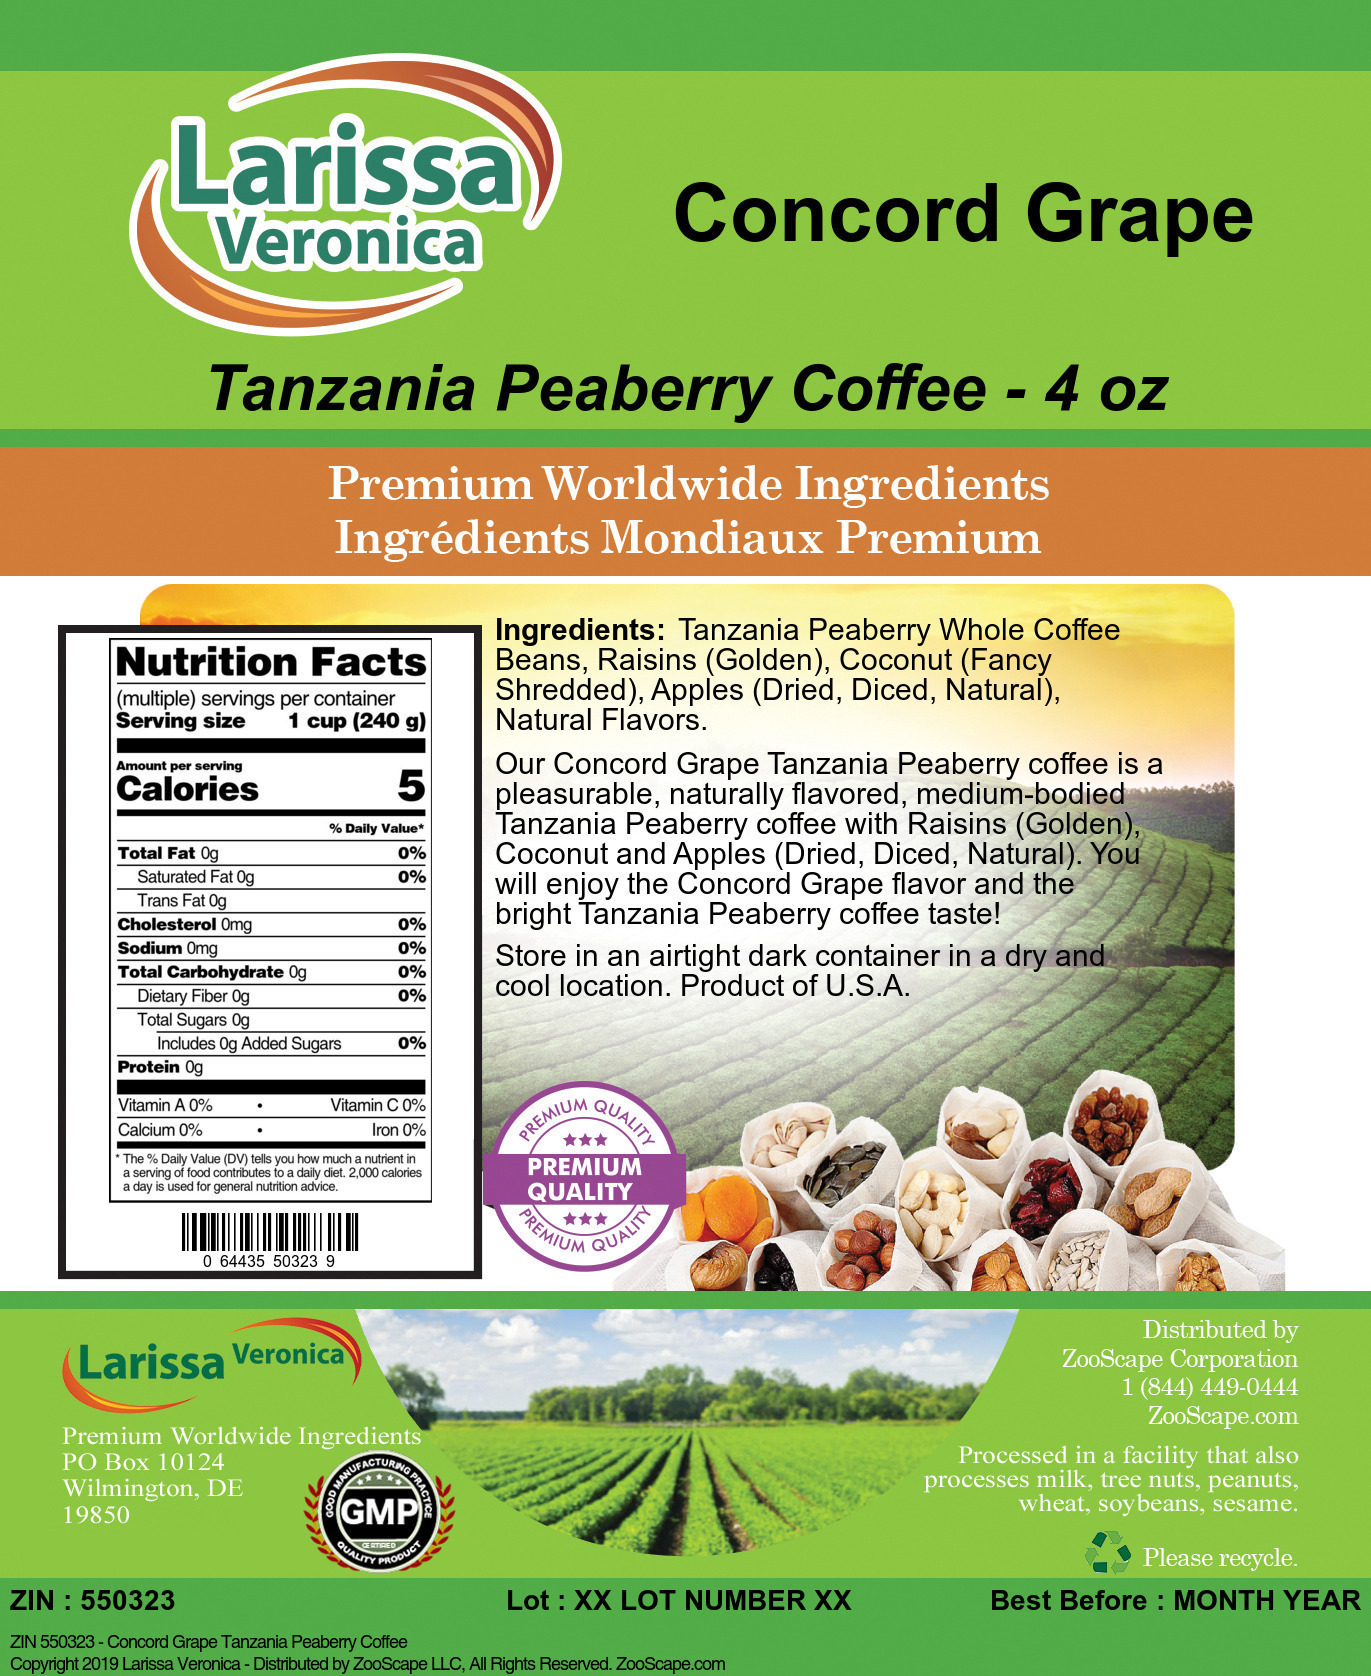 Concord Grape Tanzania Peaberry Coffee - Label